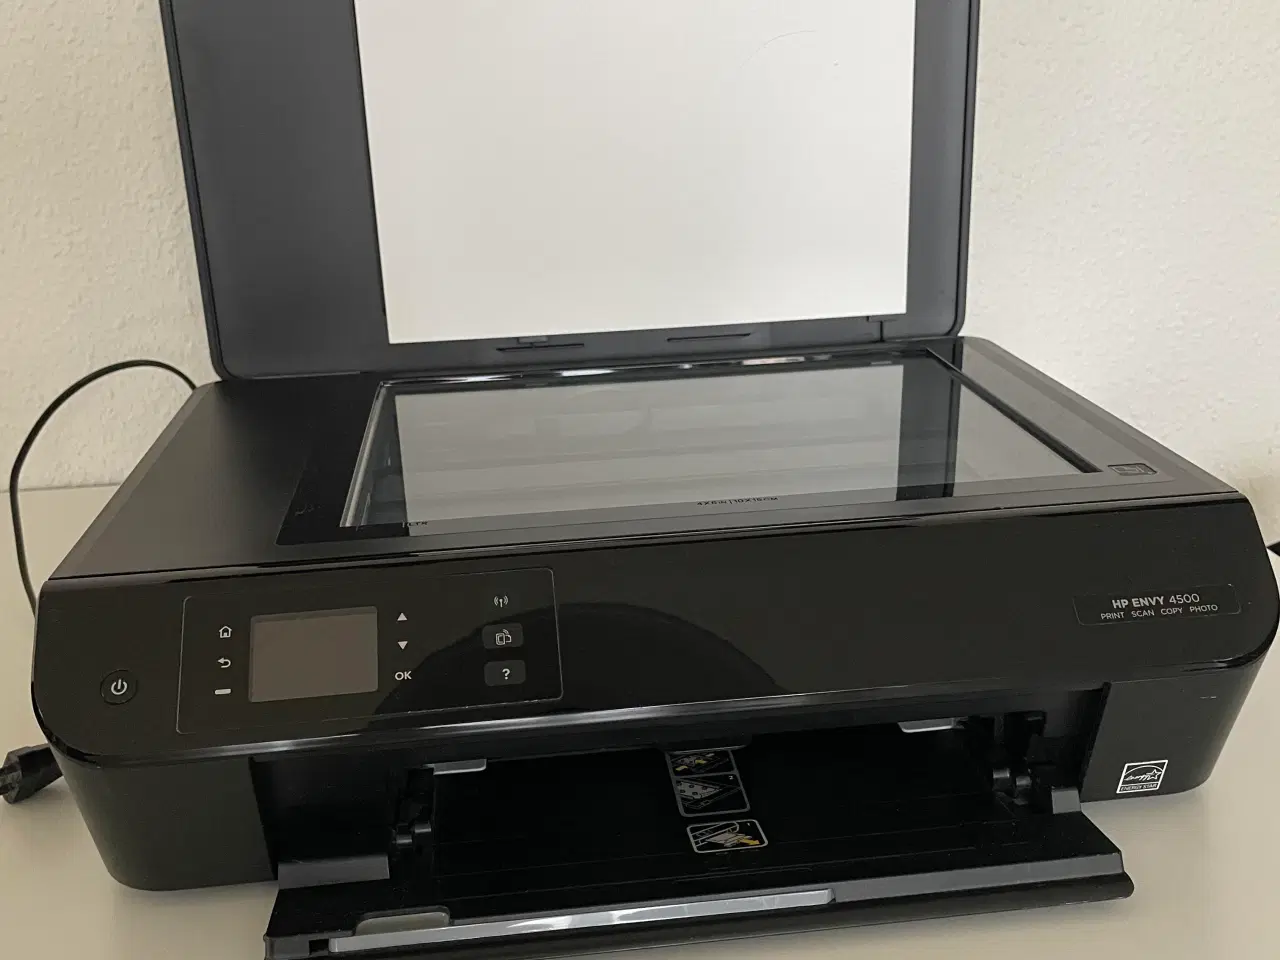 Billede 2 - HP envy 4500 print, scaner, copy, photo og  printe